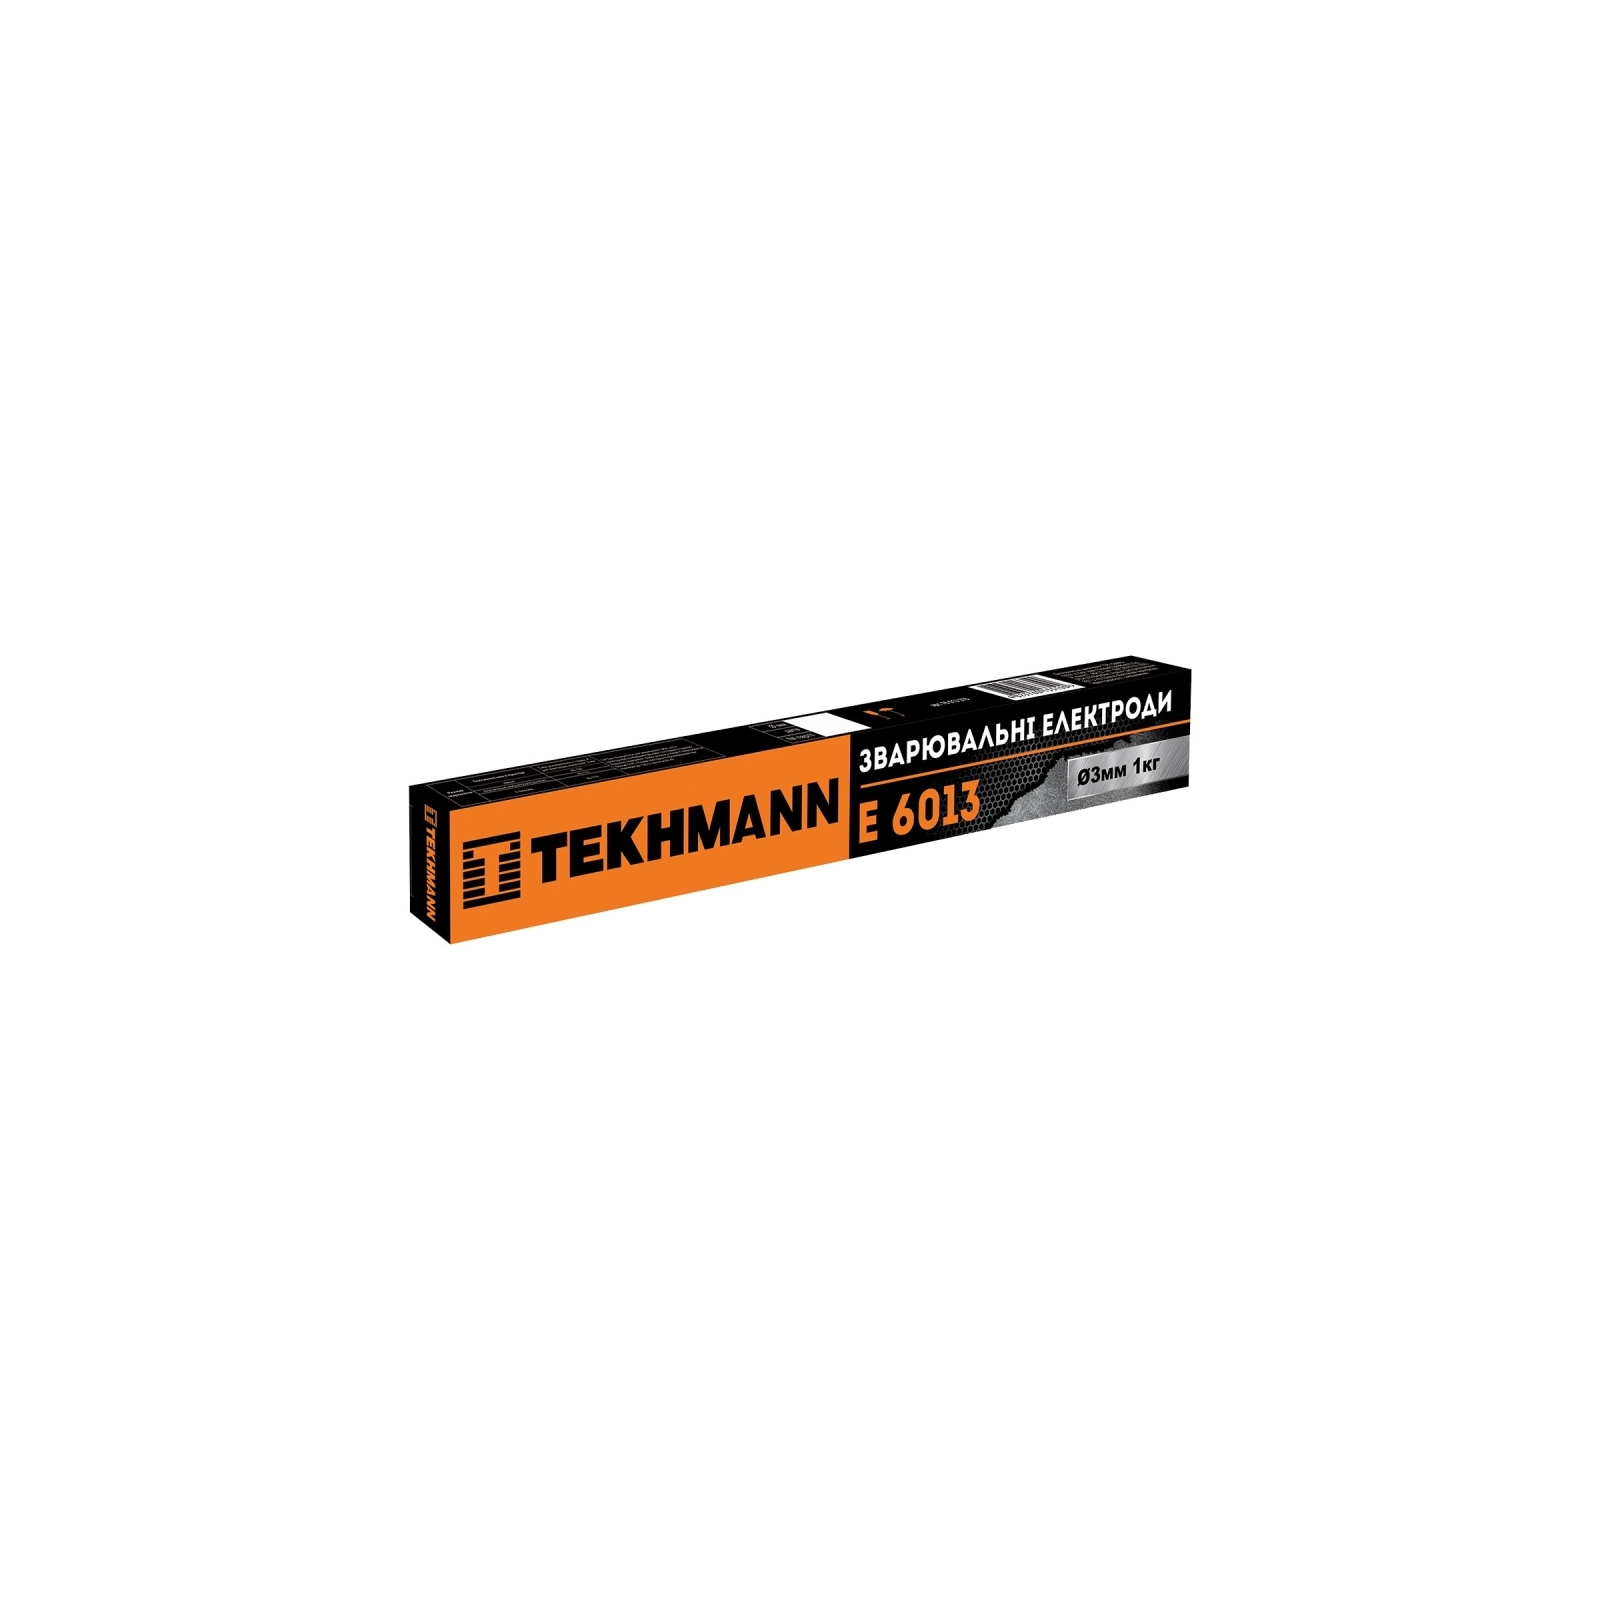 Электроды Tekhmann E 6013 d 3 мм. Х 1 кг. (76013310)